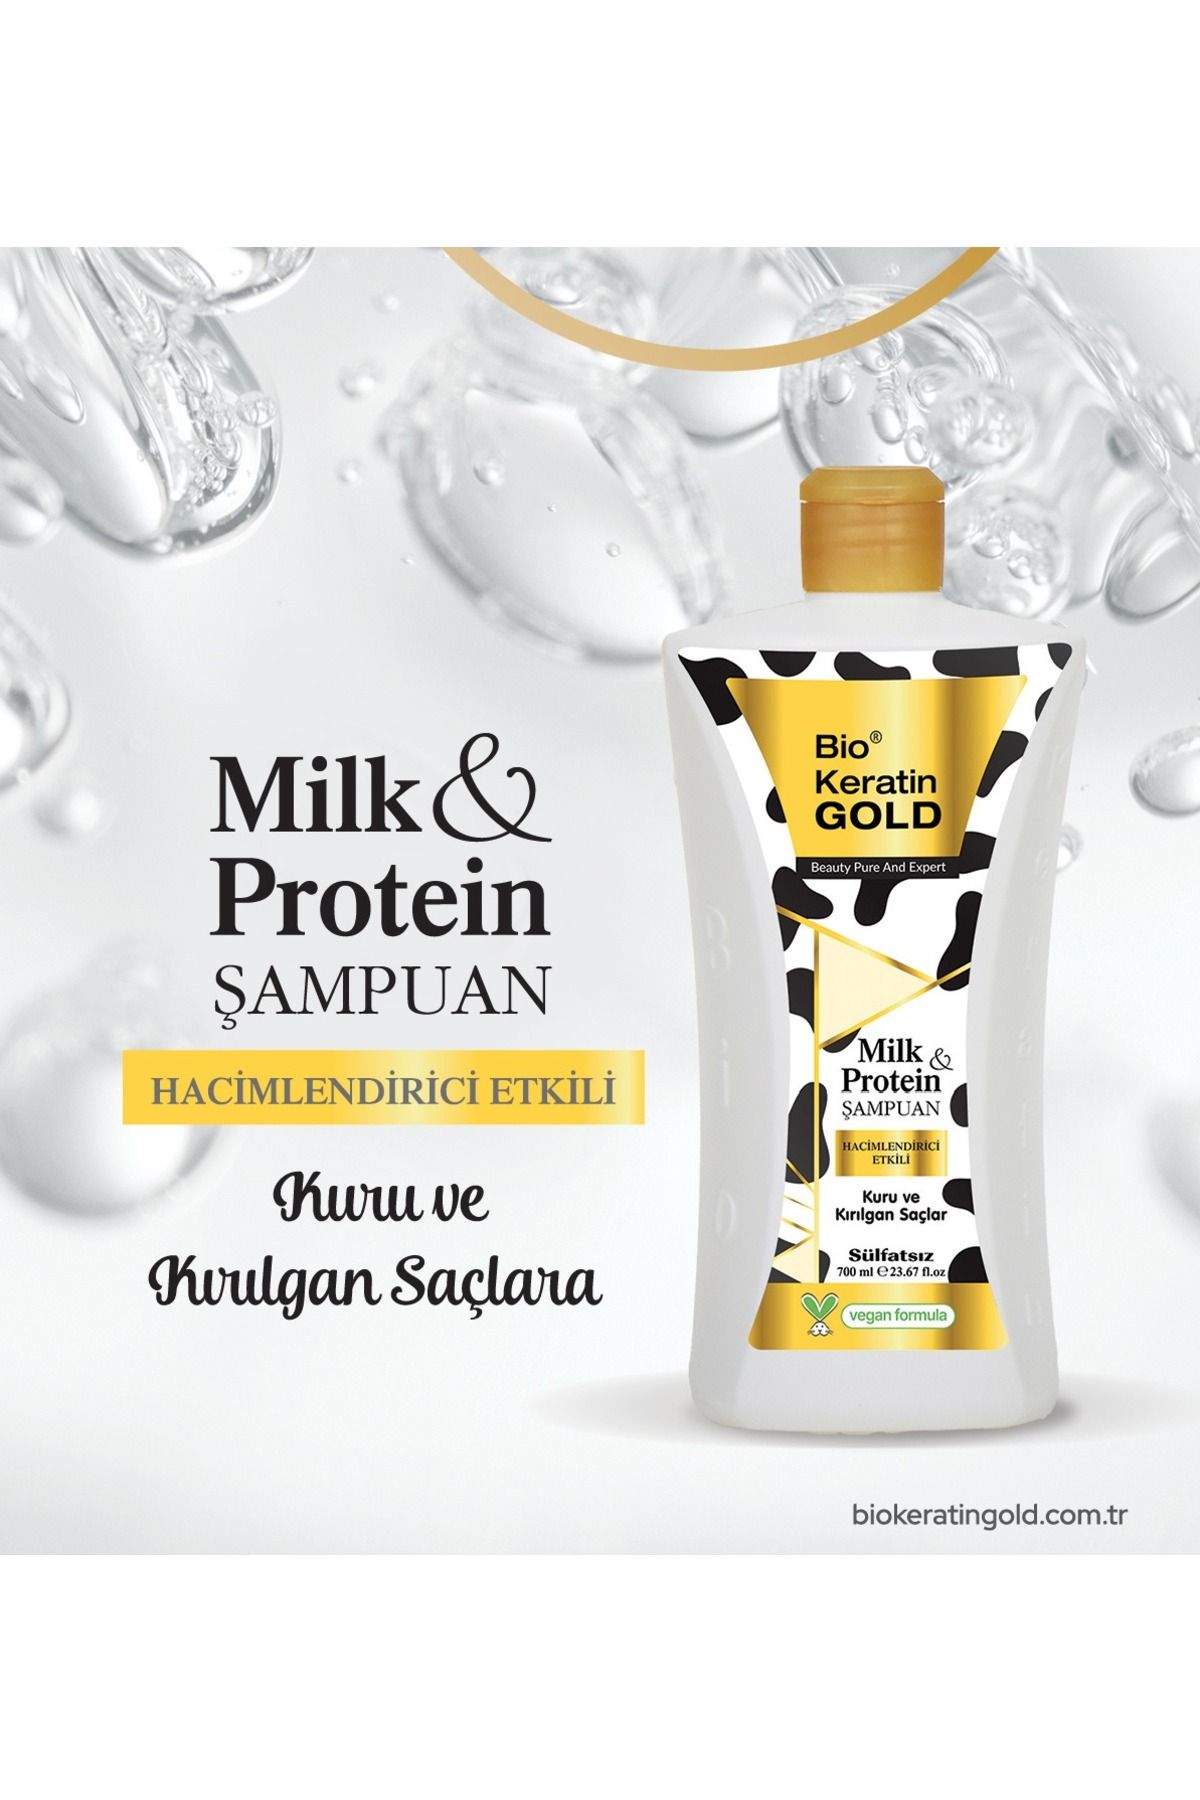 Bio Keratin Gold Milk & Protein Hacimlendirici Sülfatsız Şampuan 700 ml